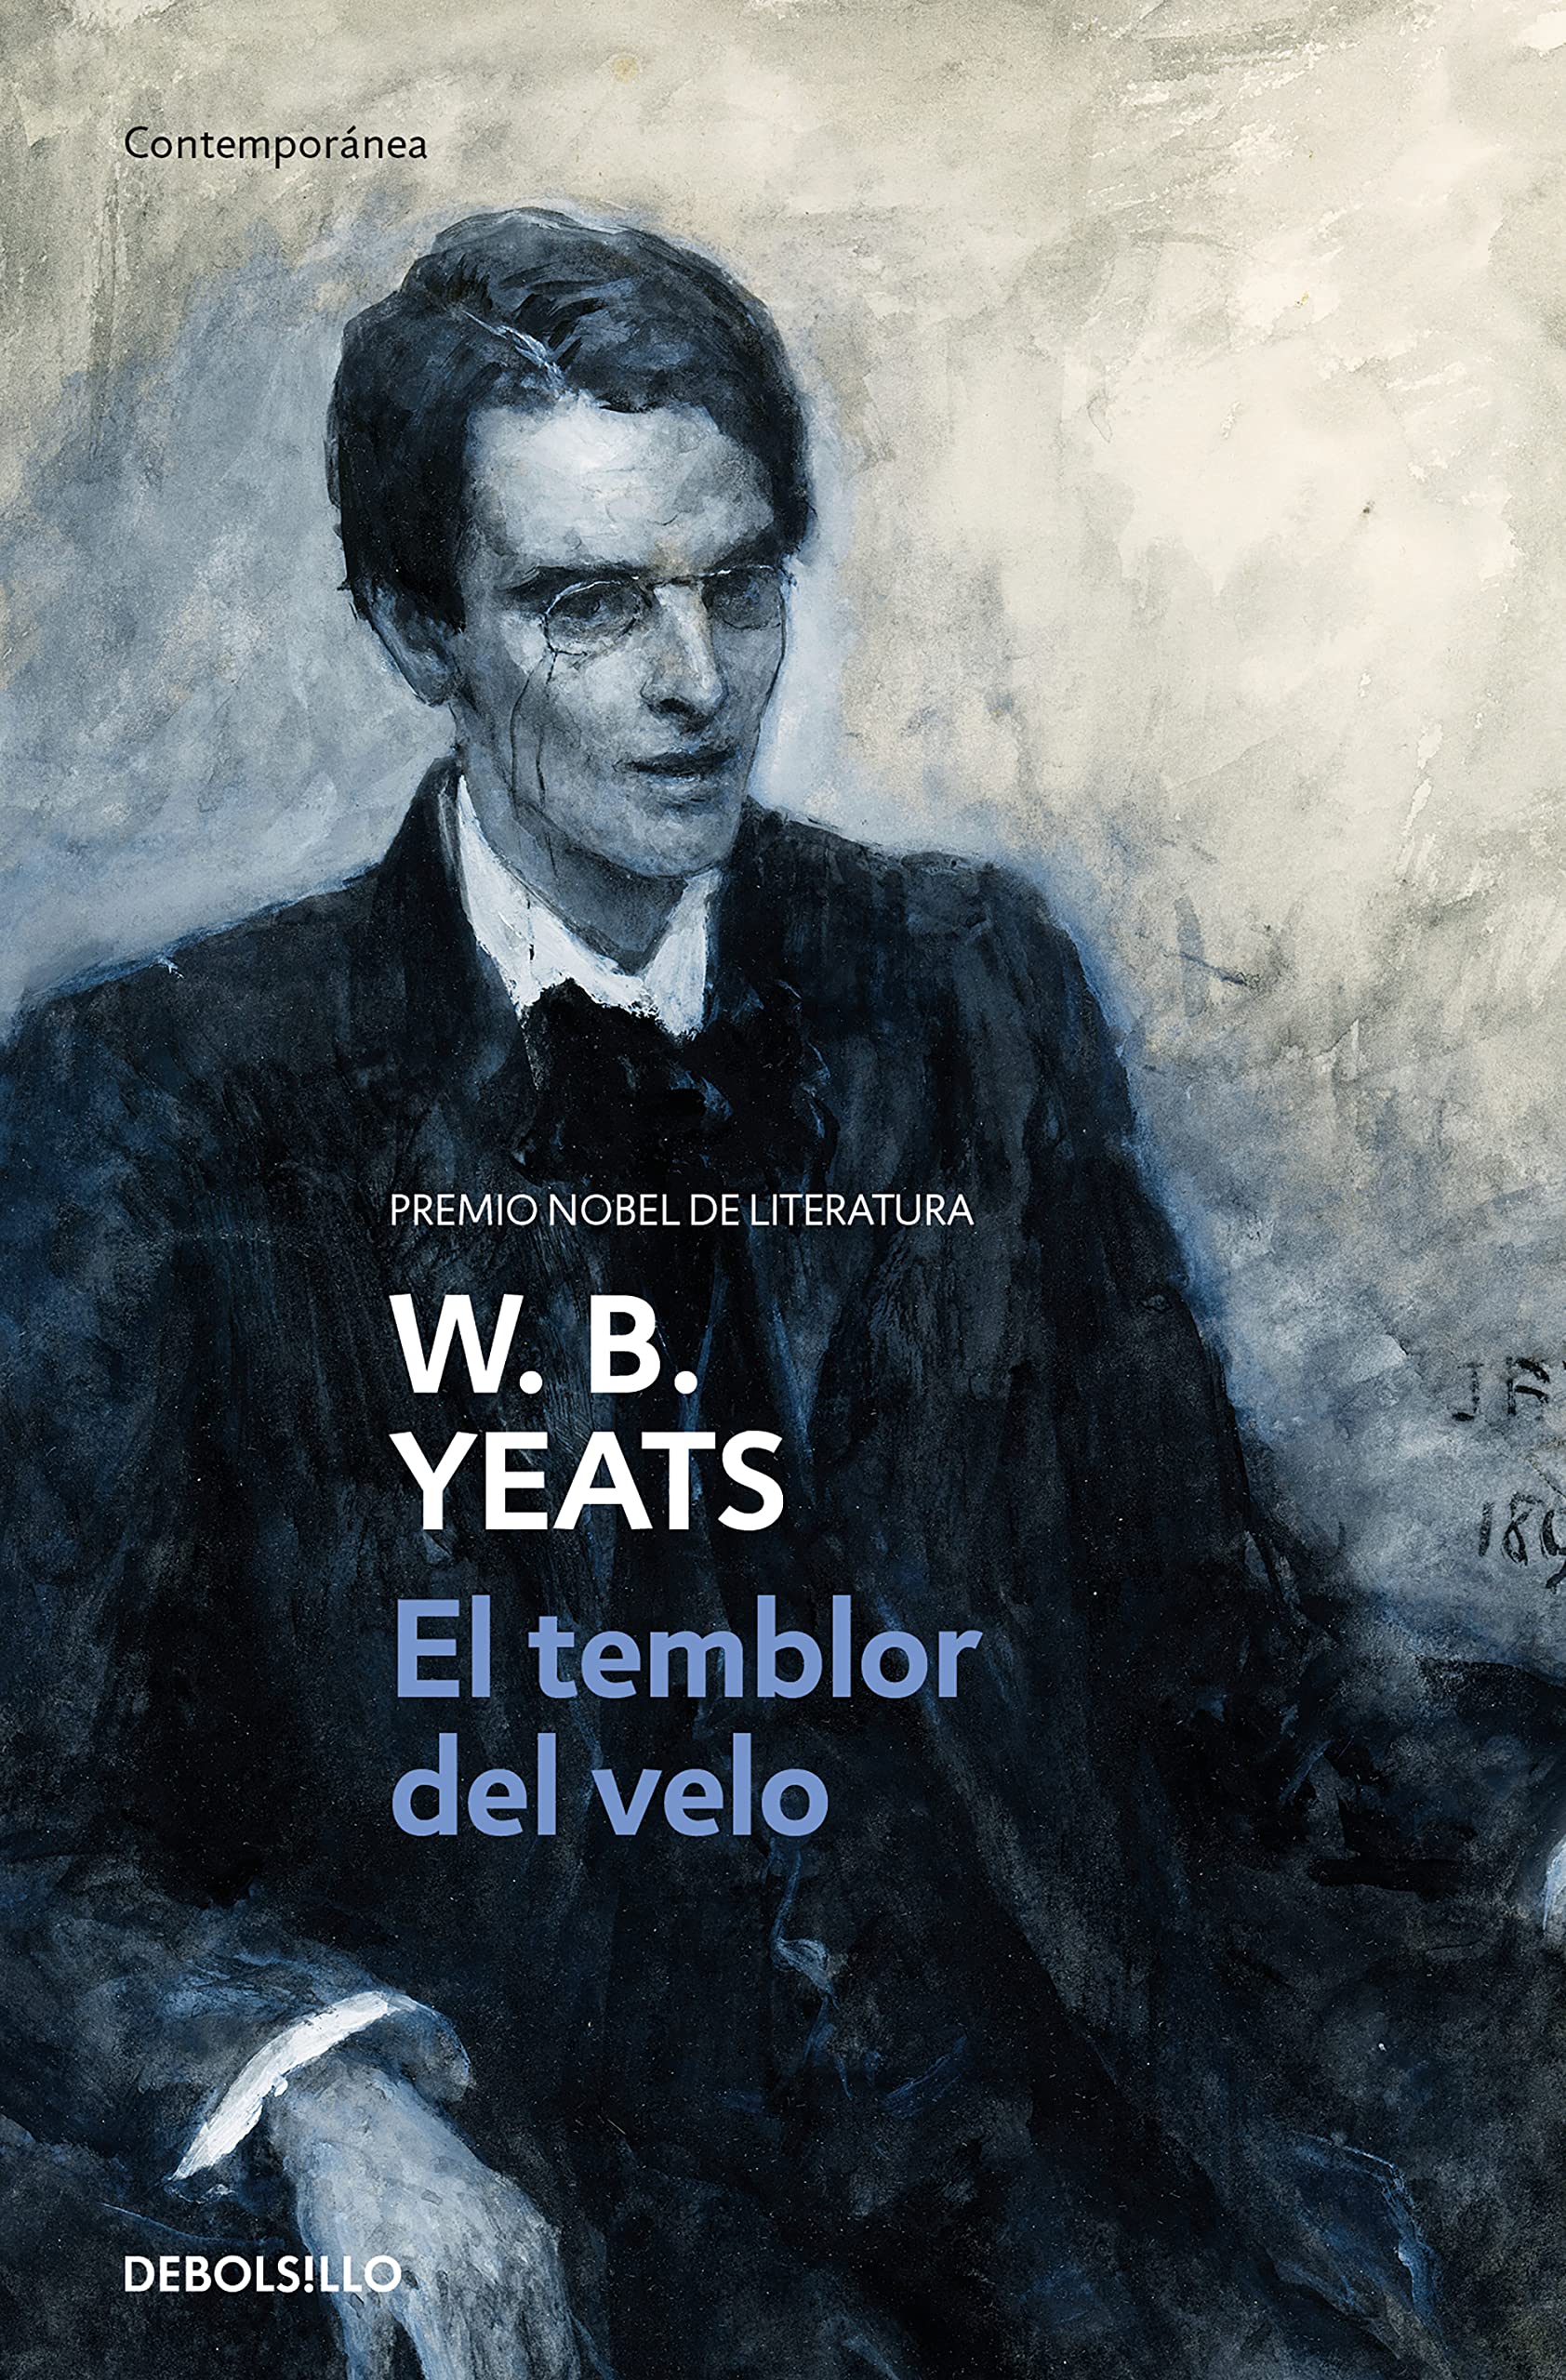 Zenda recomienda: El temblor del velo, de William Butler Yeats